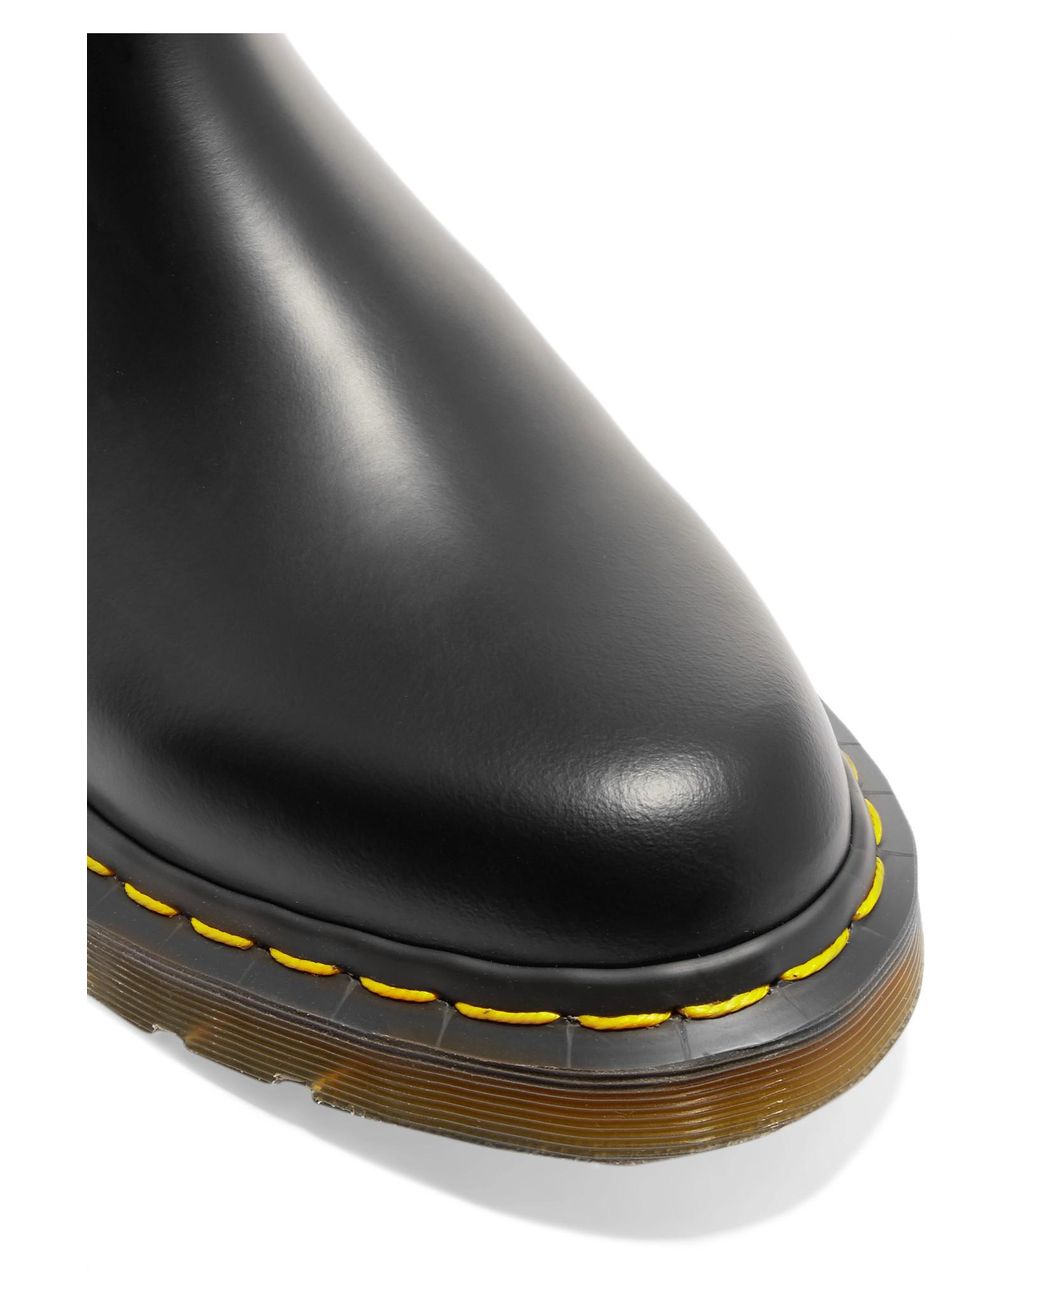 Comme des Garçons + Dr Martens Leather Chelsea Boots in Black | Lyst